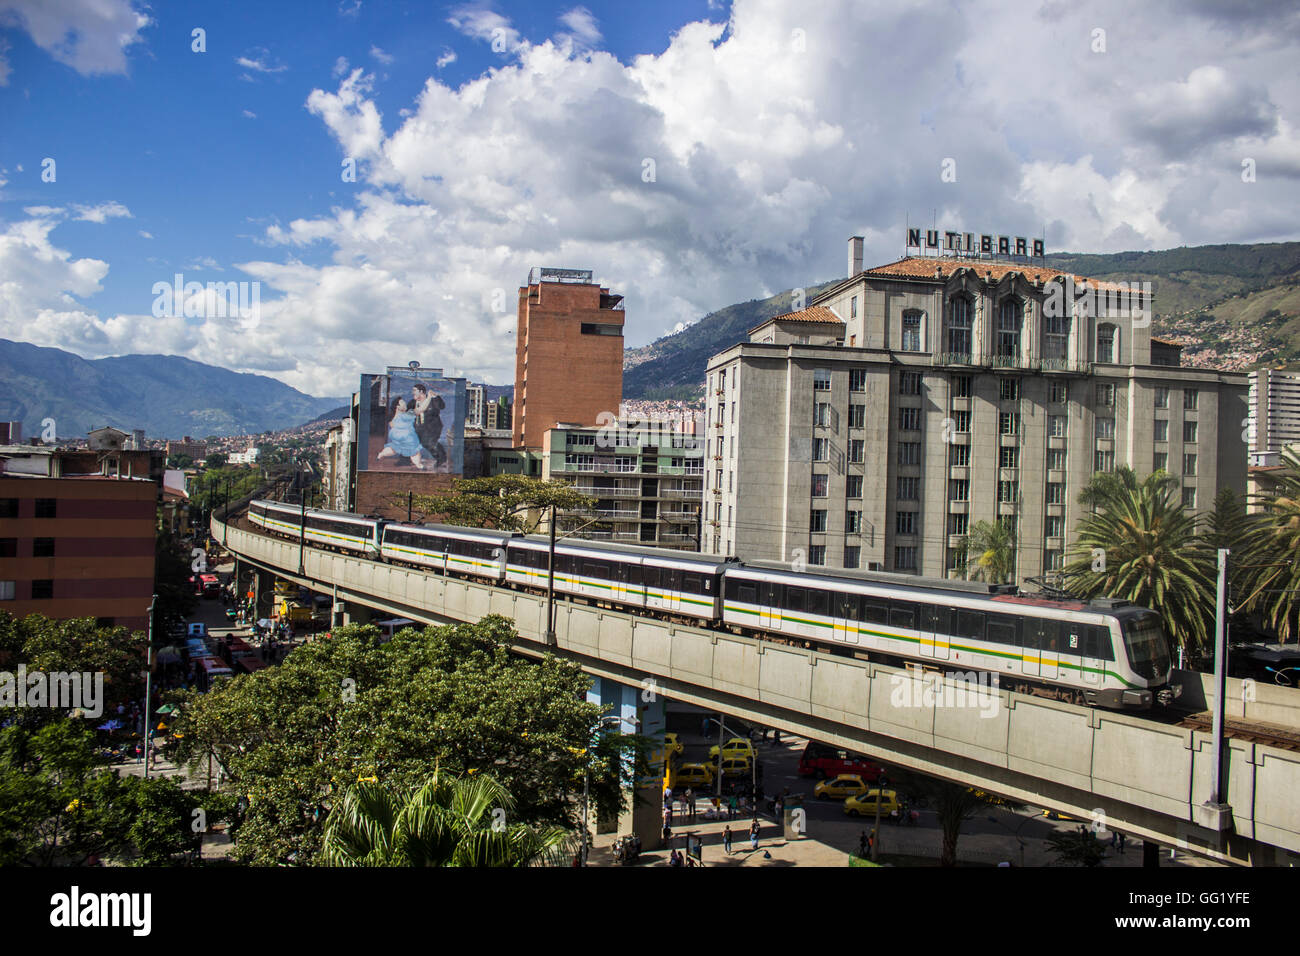 Un train de métro au centre-ville de Medellin, Colombie Banque D'Images